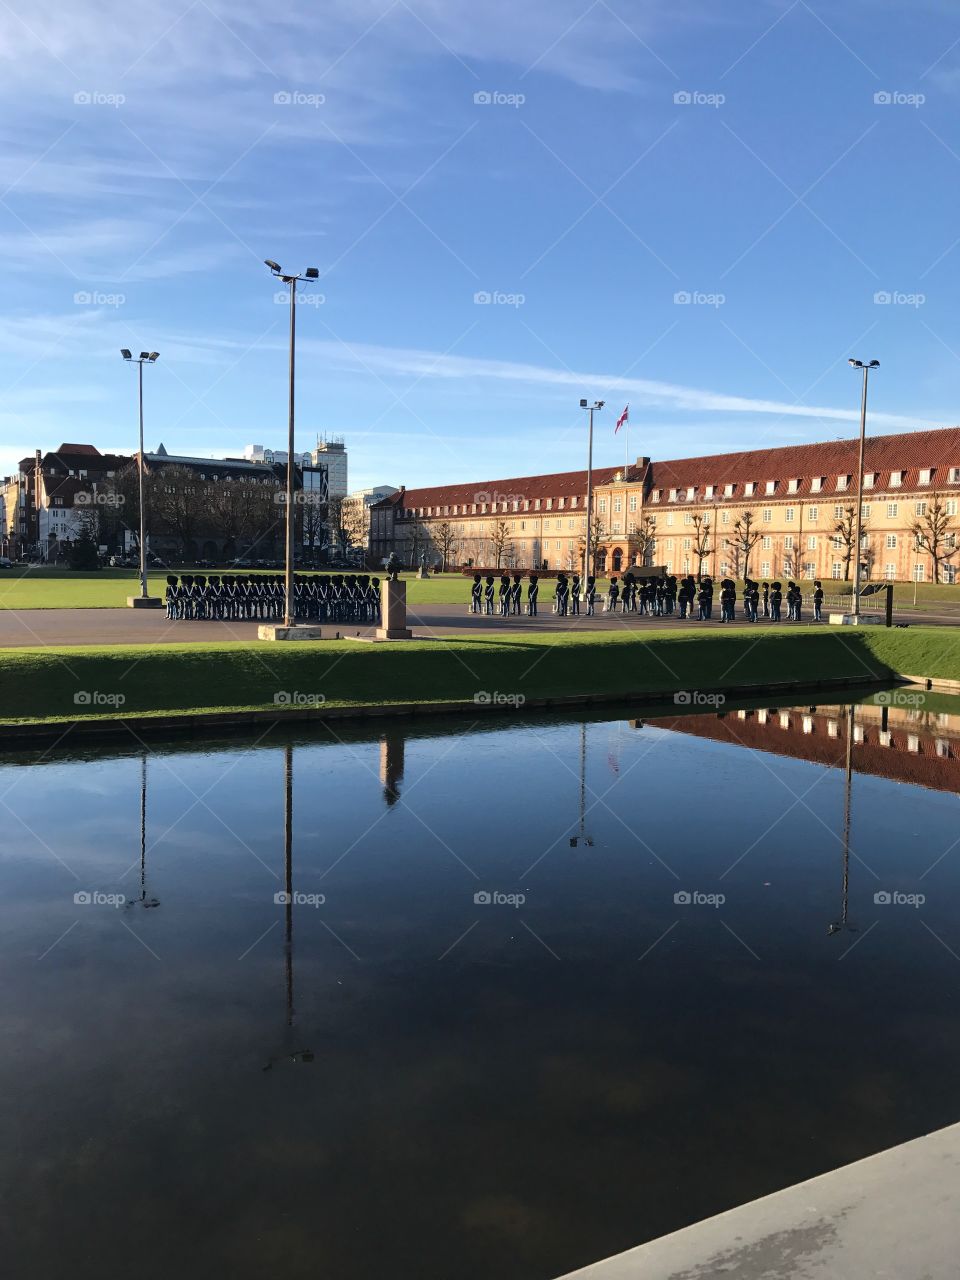 Military parade in Copenhagen 